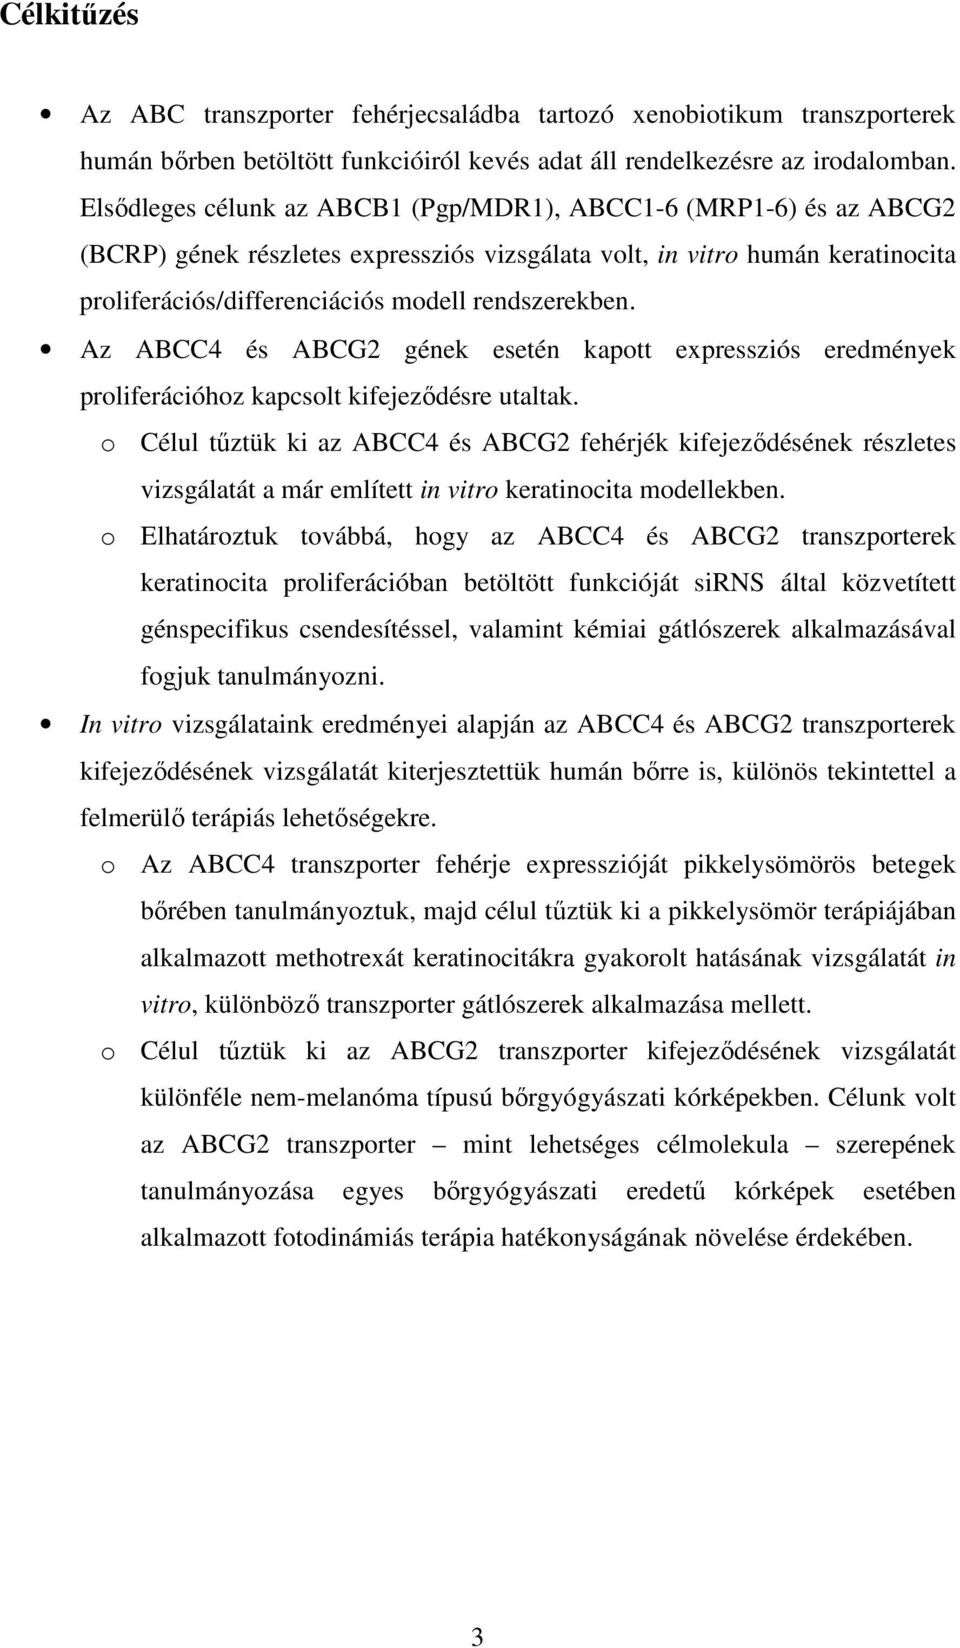 Az ABCC4 és ABCG2 gének esetén kapott expressziós eredmények proliferációhoz kapcsolt kifejeződésre utaltak.